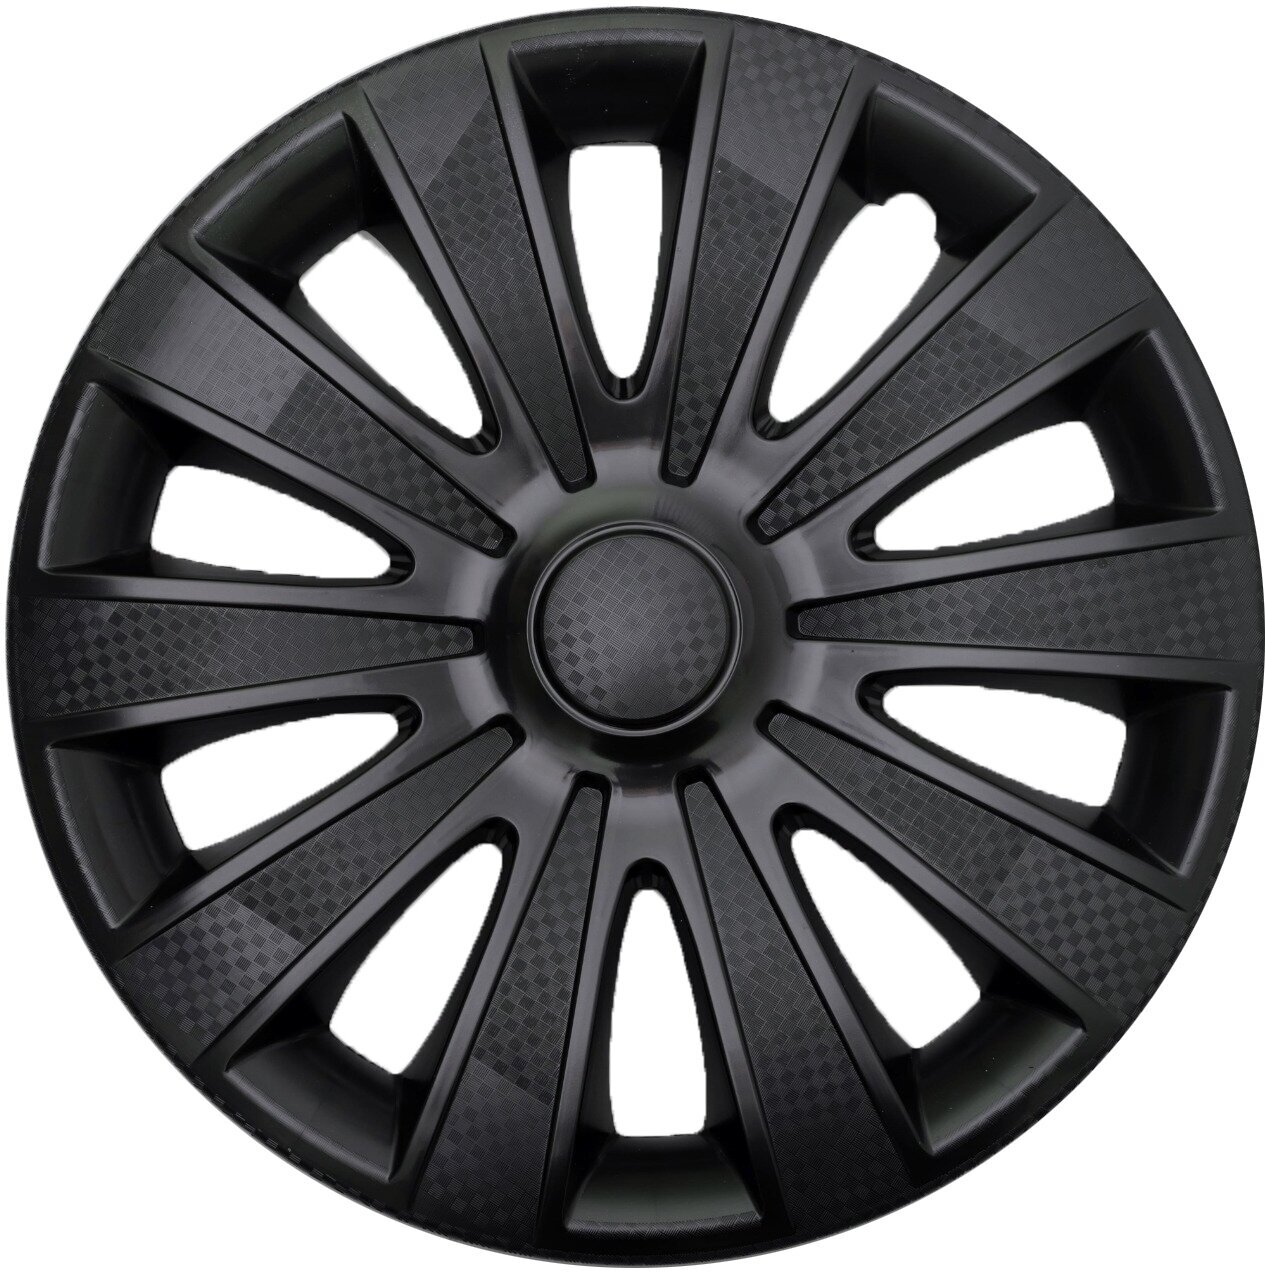 Колпаки на колеса STAR карат черный R16 комплект 4шт на диски радиус 16 легковой авто декоративные цвет черный карбон Black